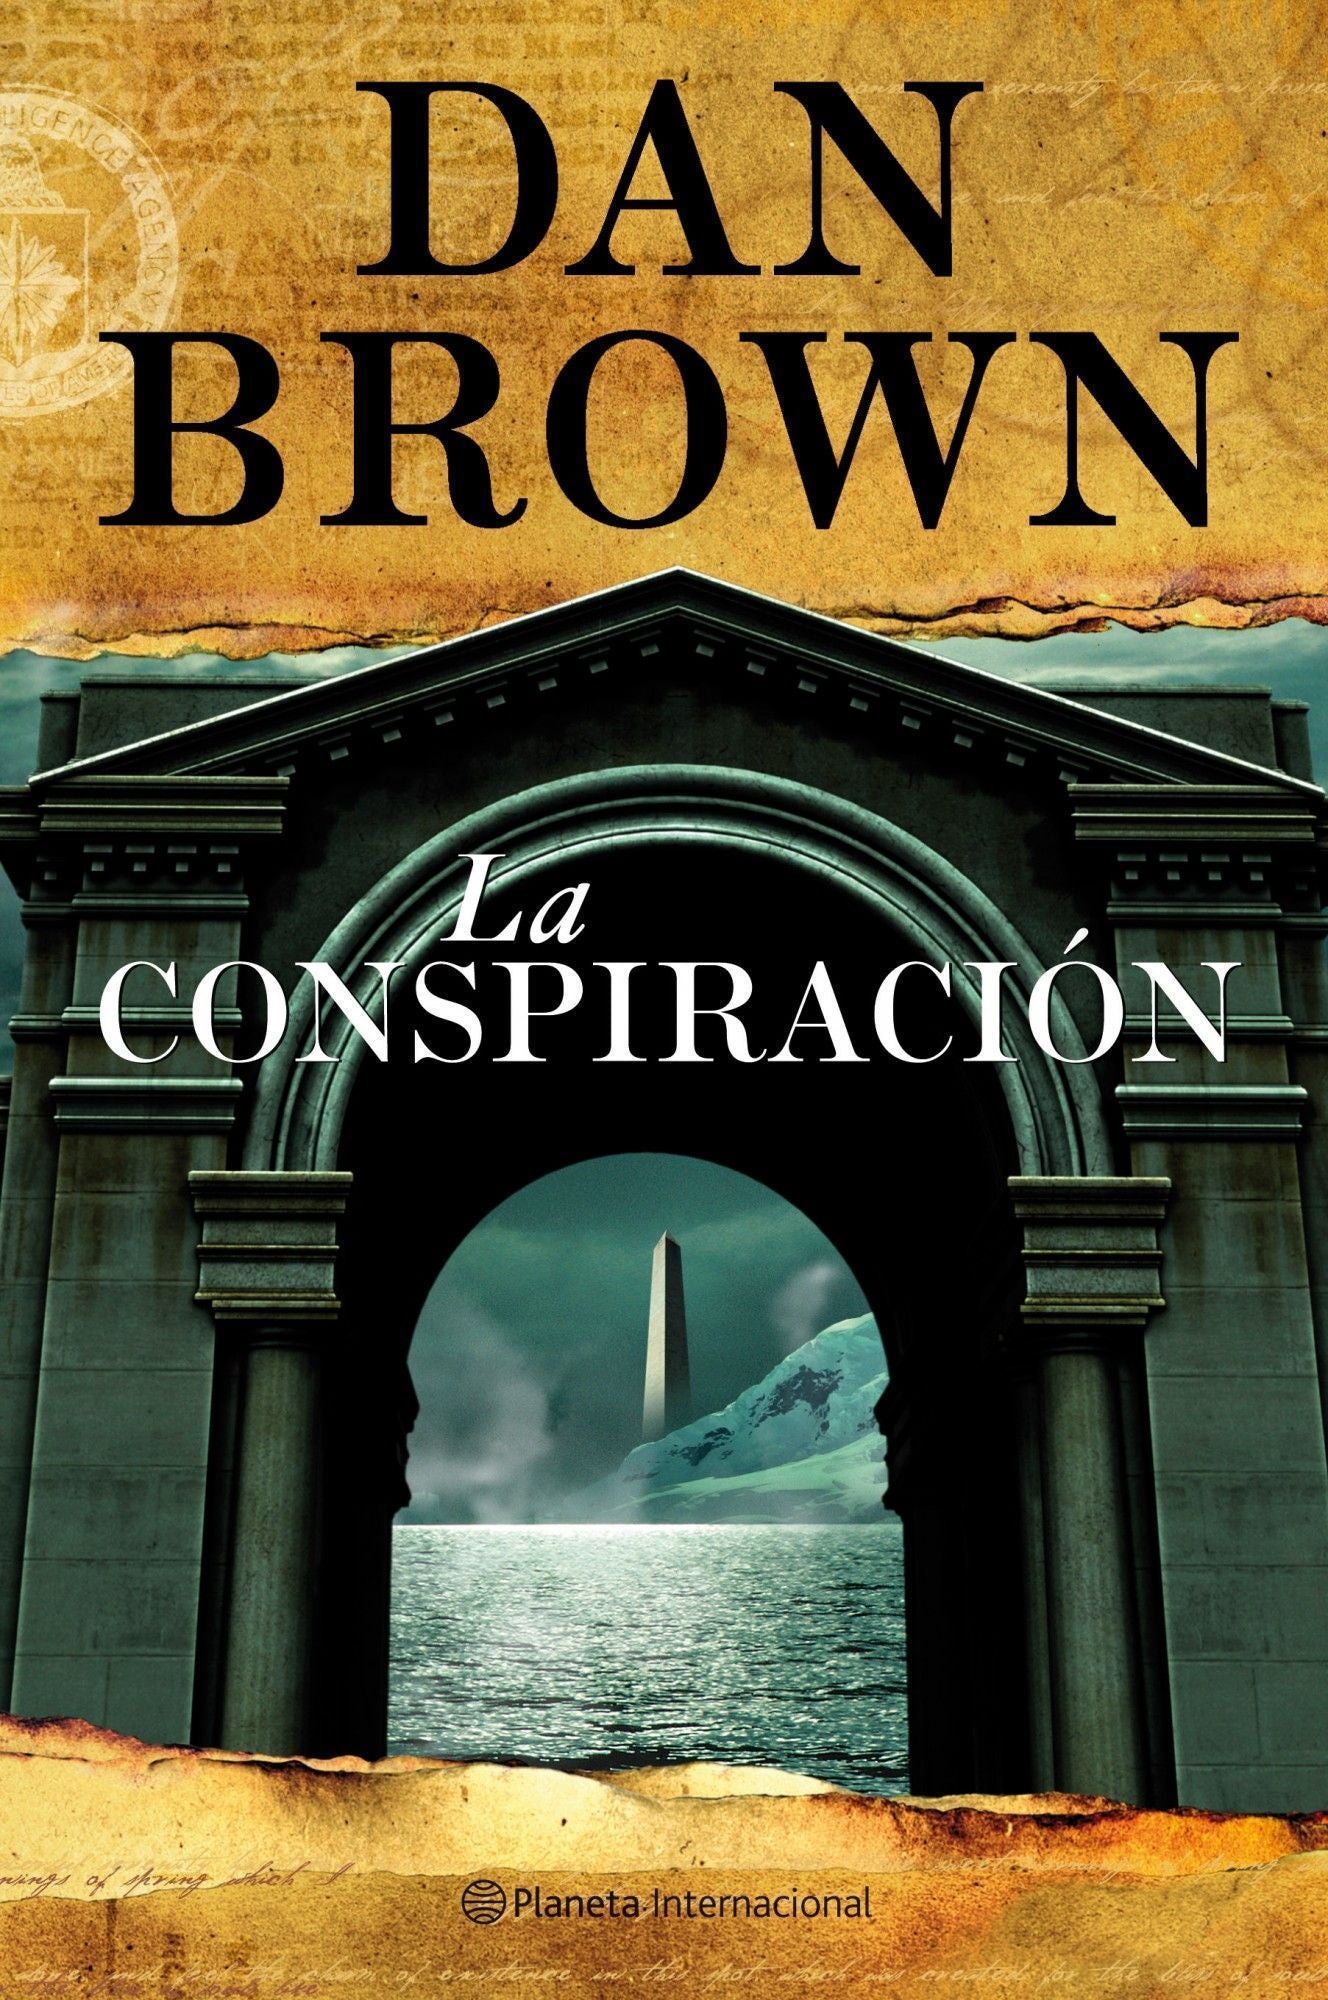 Libro Dan Brown - La conspiración